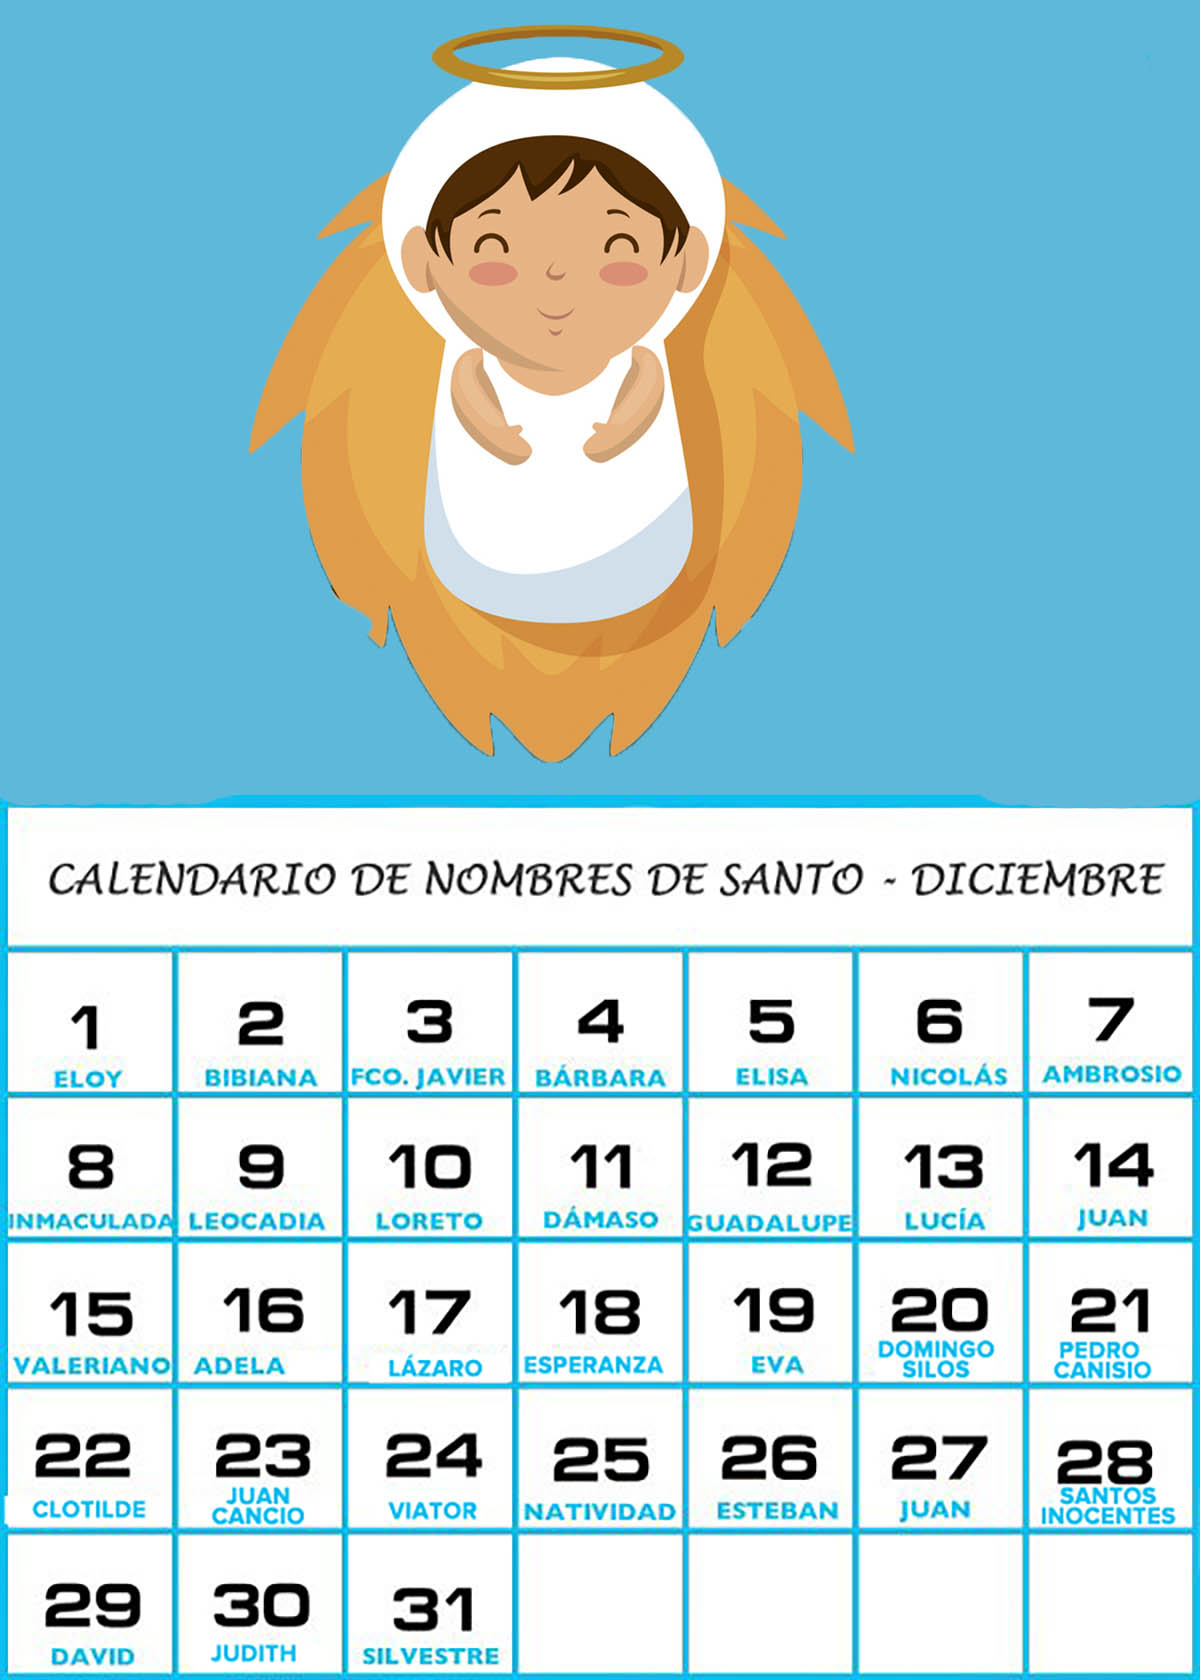 Calendario de los nombres de santos de Diciembre